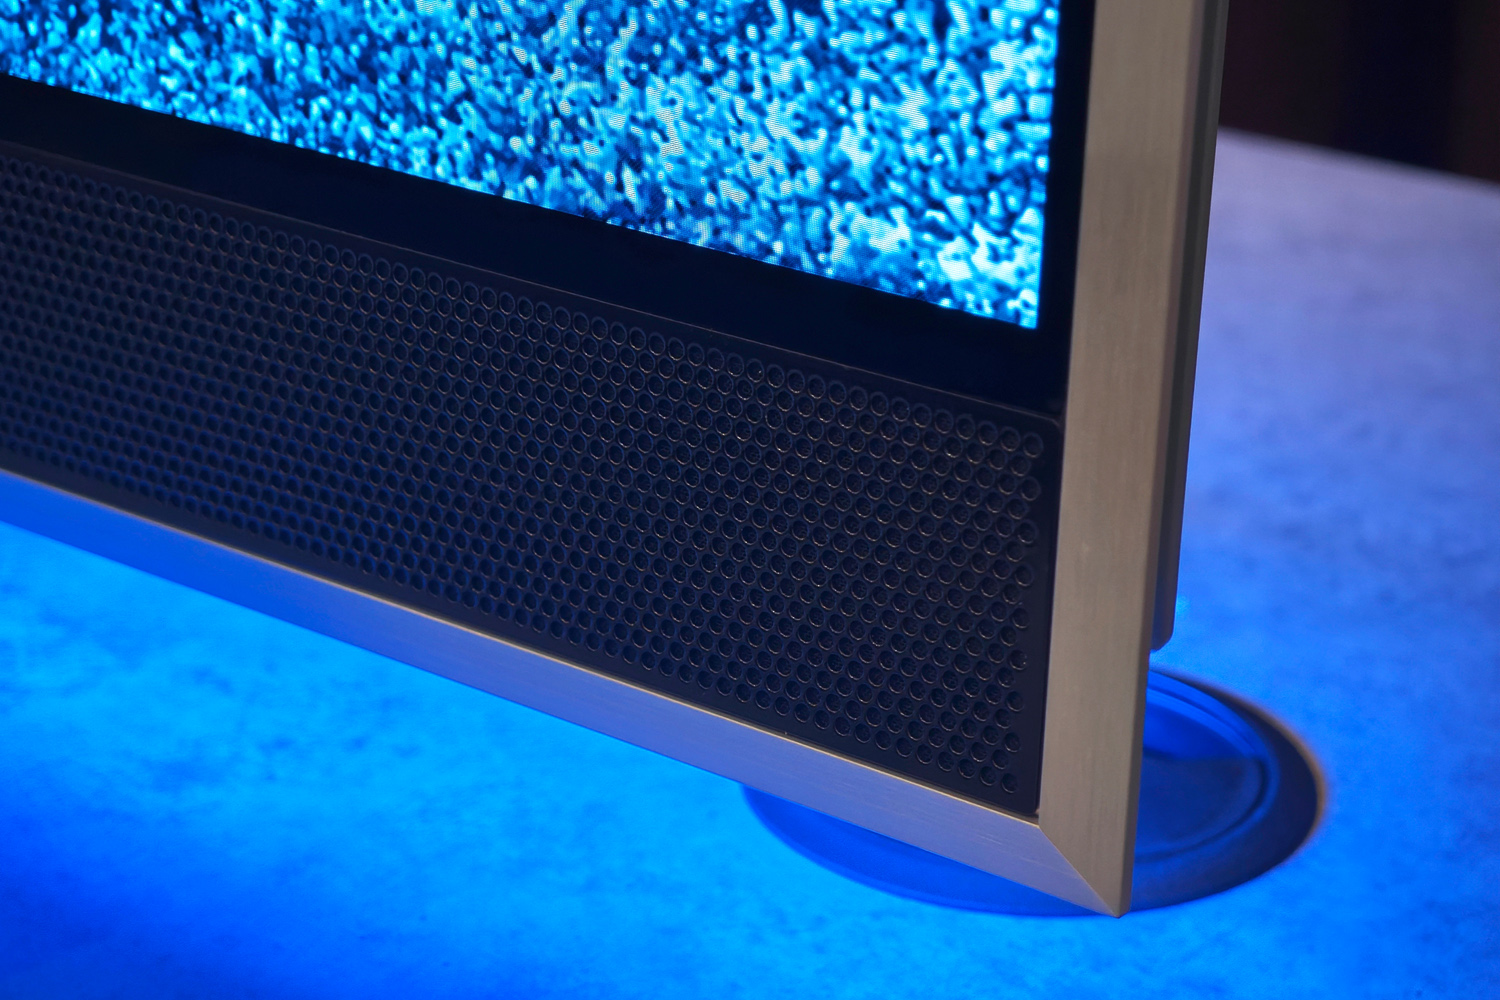 Loewe Stellar TV hands-on speakers